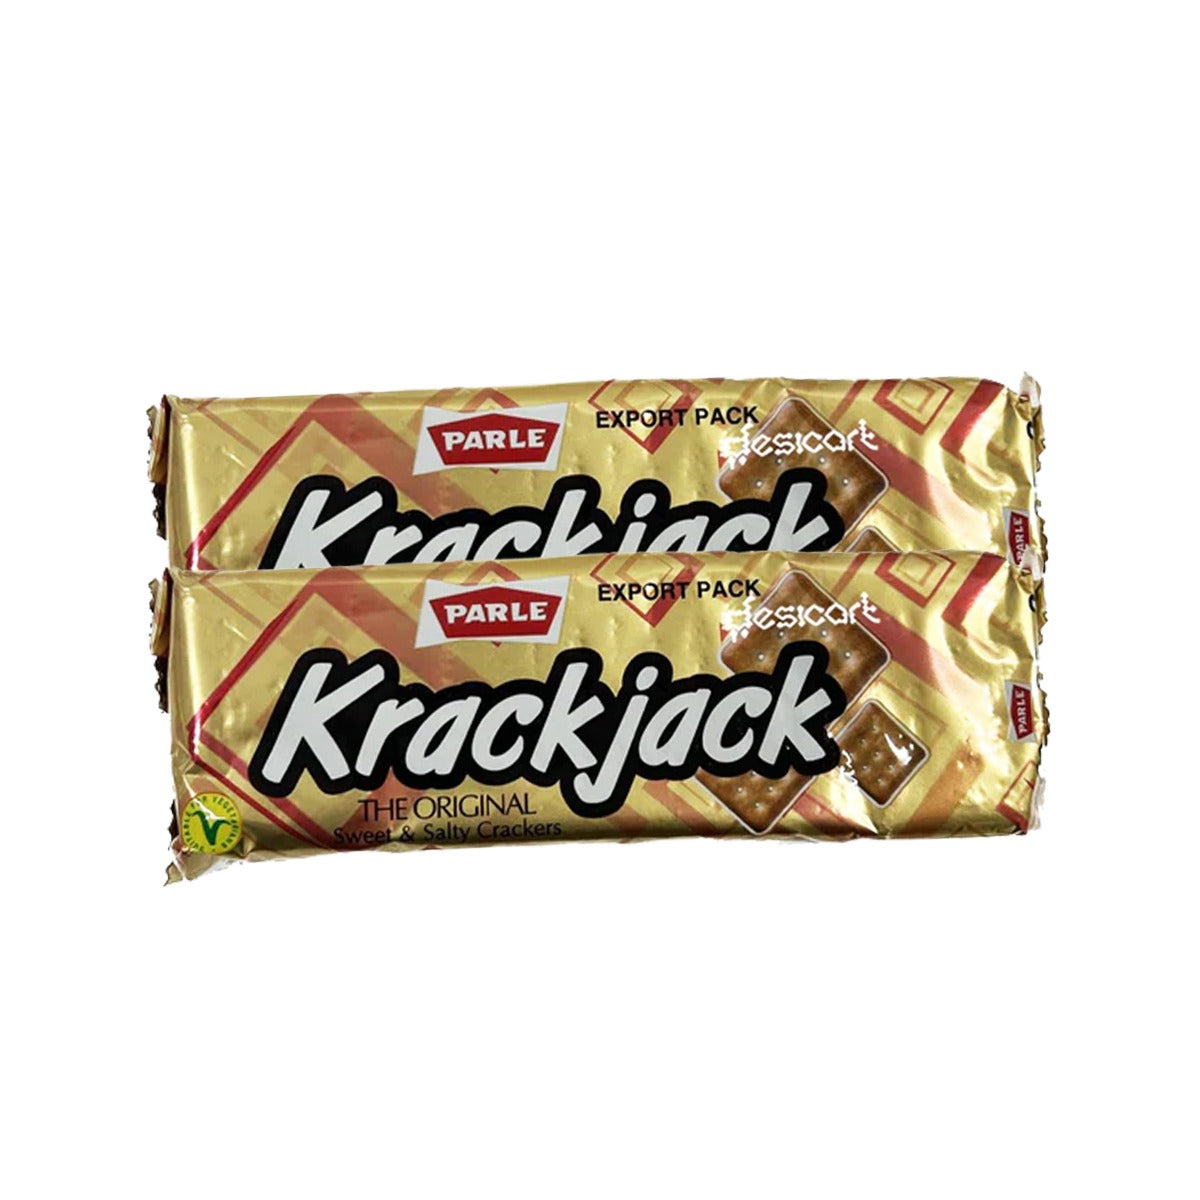 Parle Krack Jack (Pack of 2) 60g